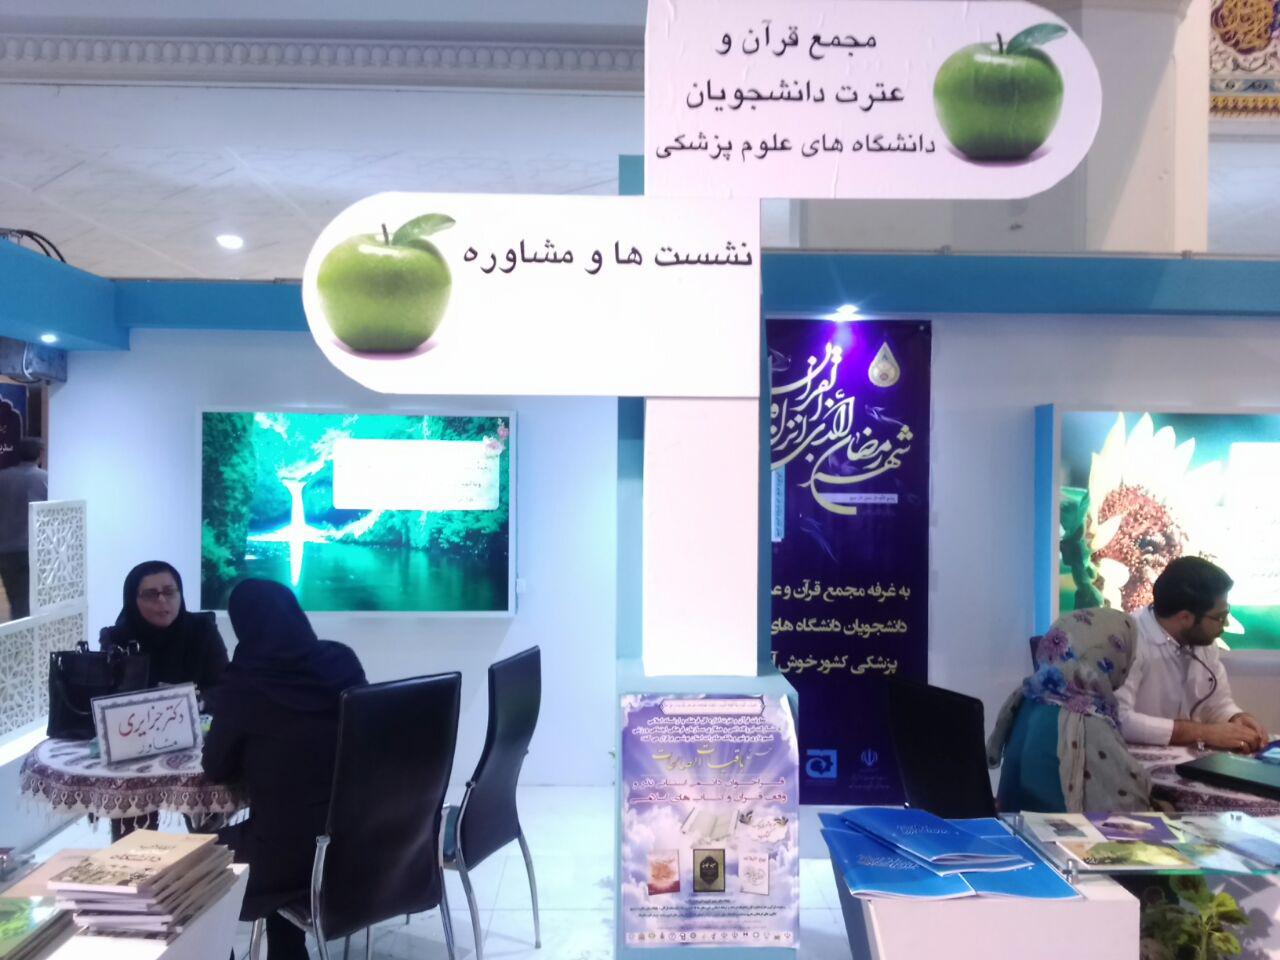 غرفه وزارت بهداشت در نمایشگاه قران